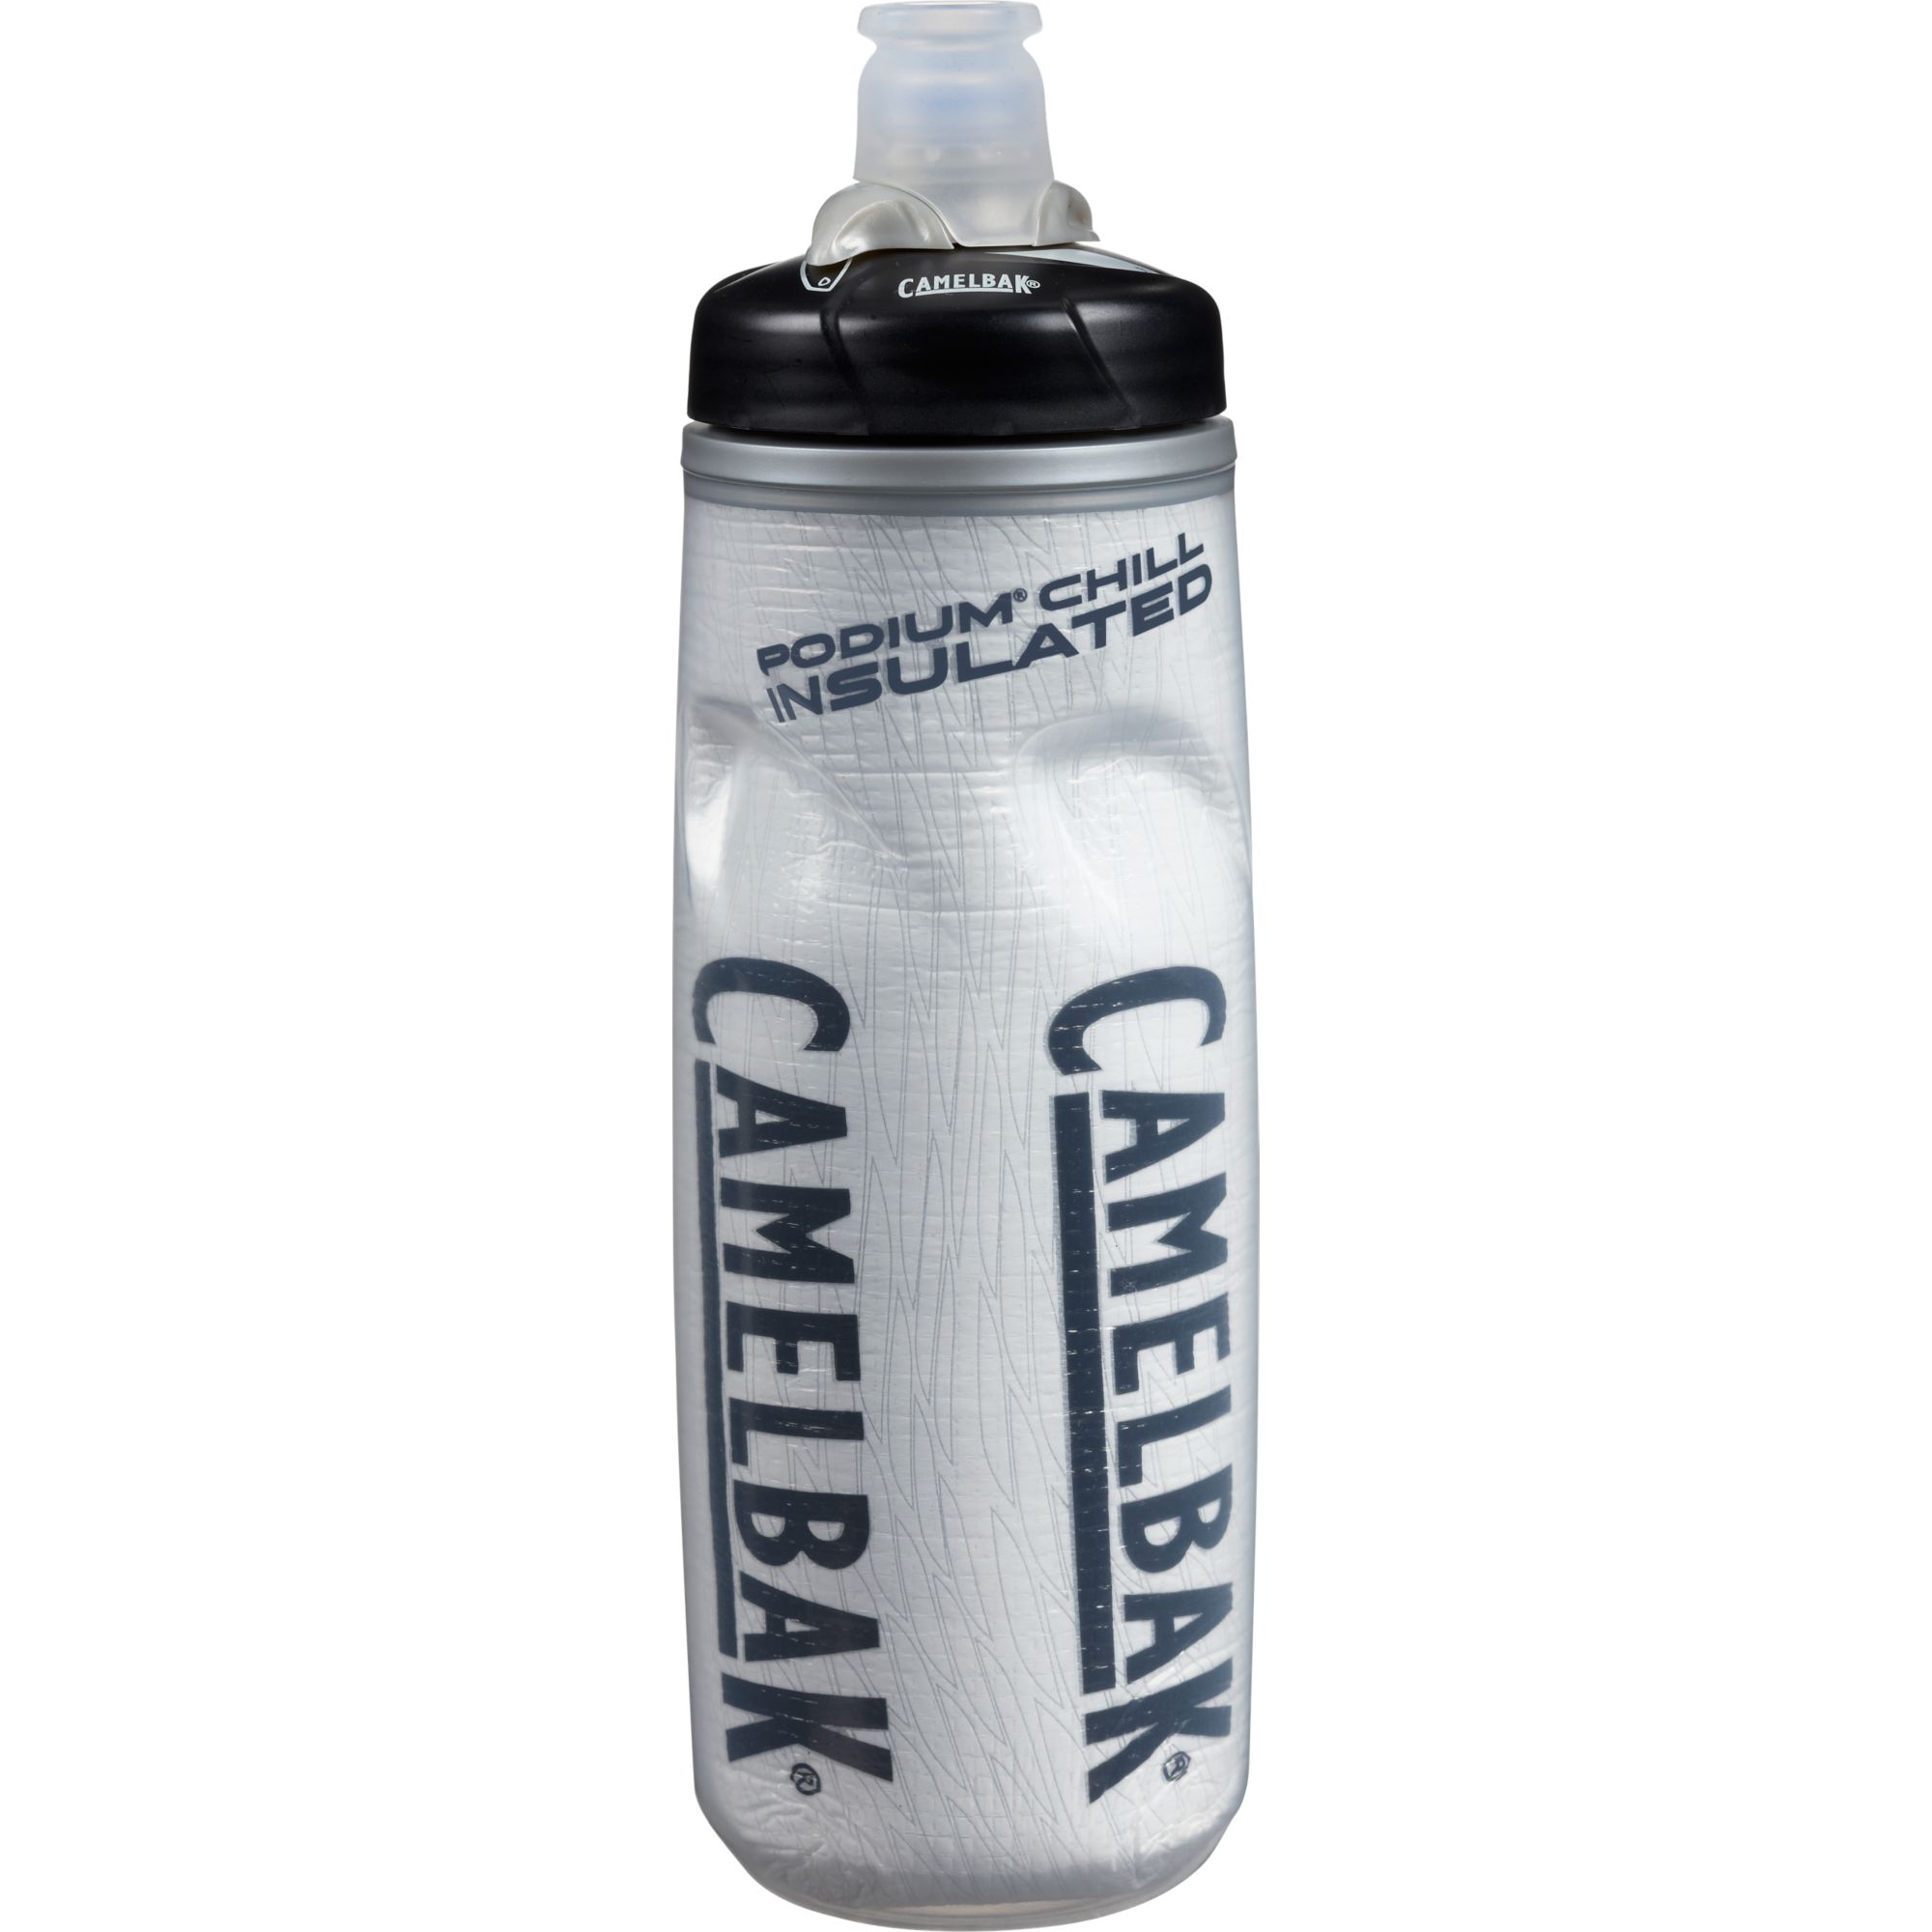 camelbak podium chill 620ml water bottle